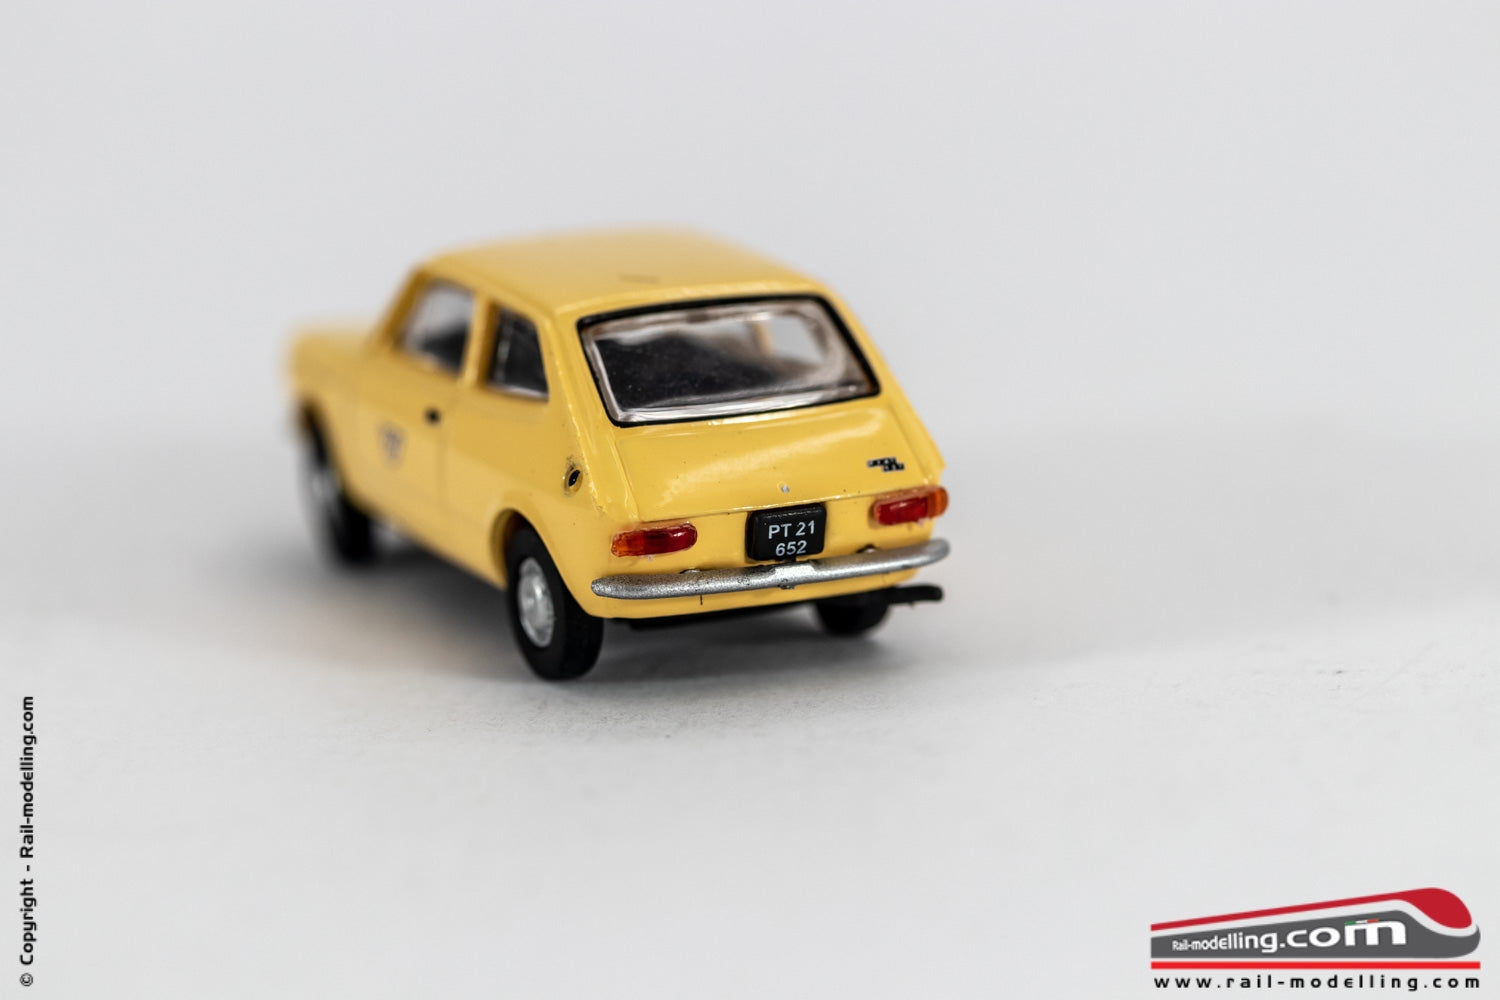 ROCO 5394 - H0 1:87 - Auto modellino Fiat 127 gialla delle poste austriache